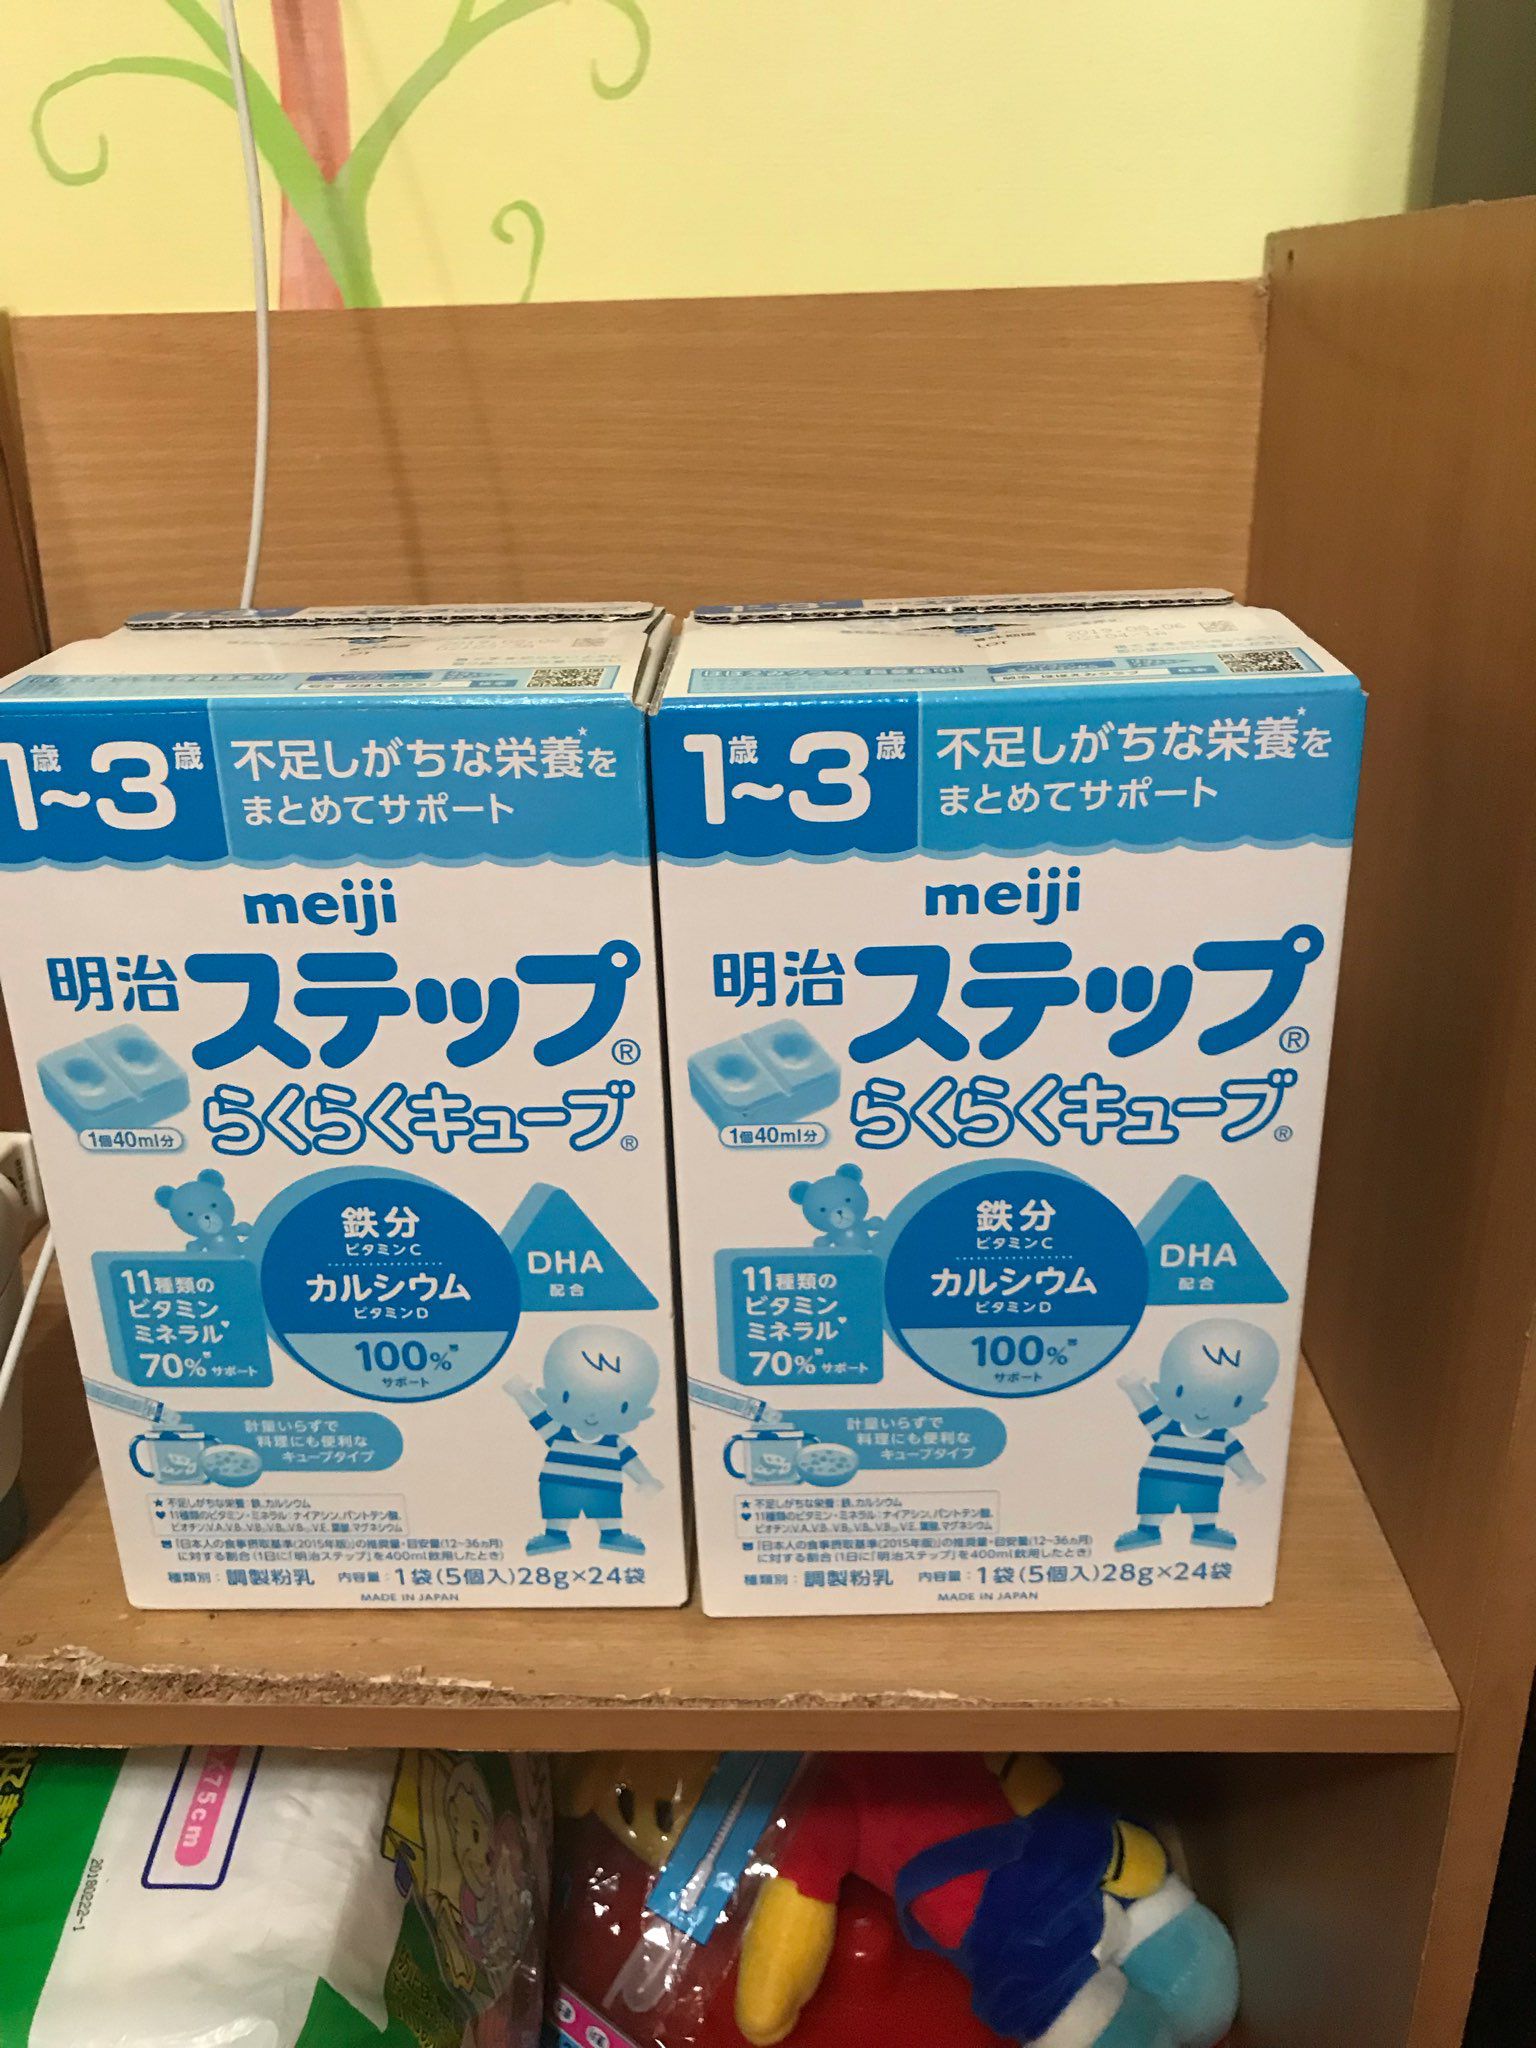 售日本境內奶粉